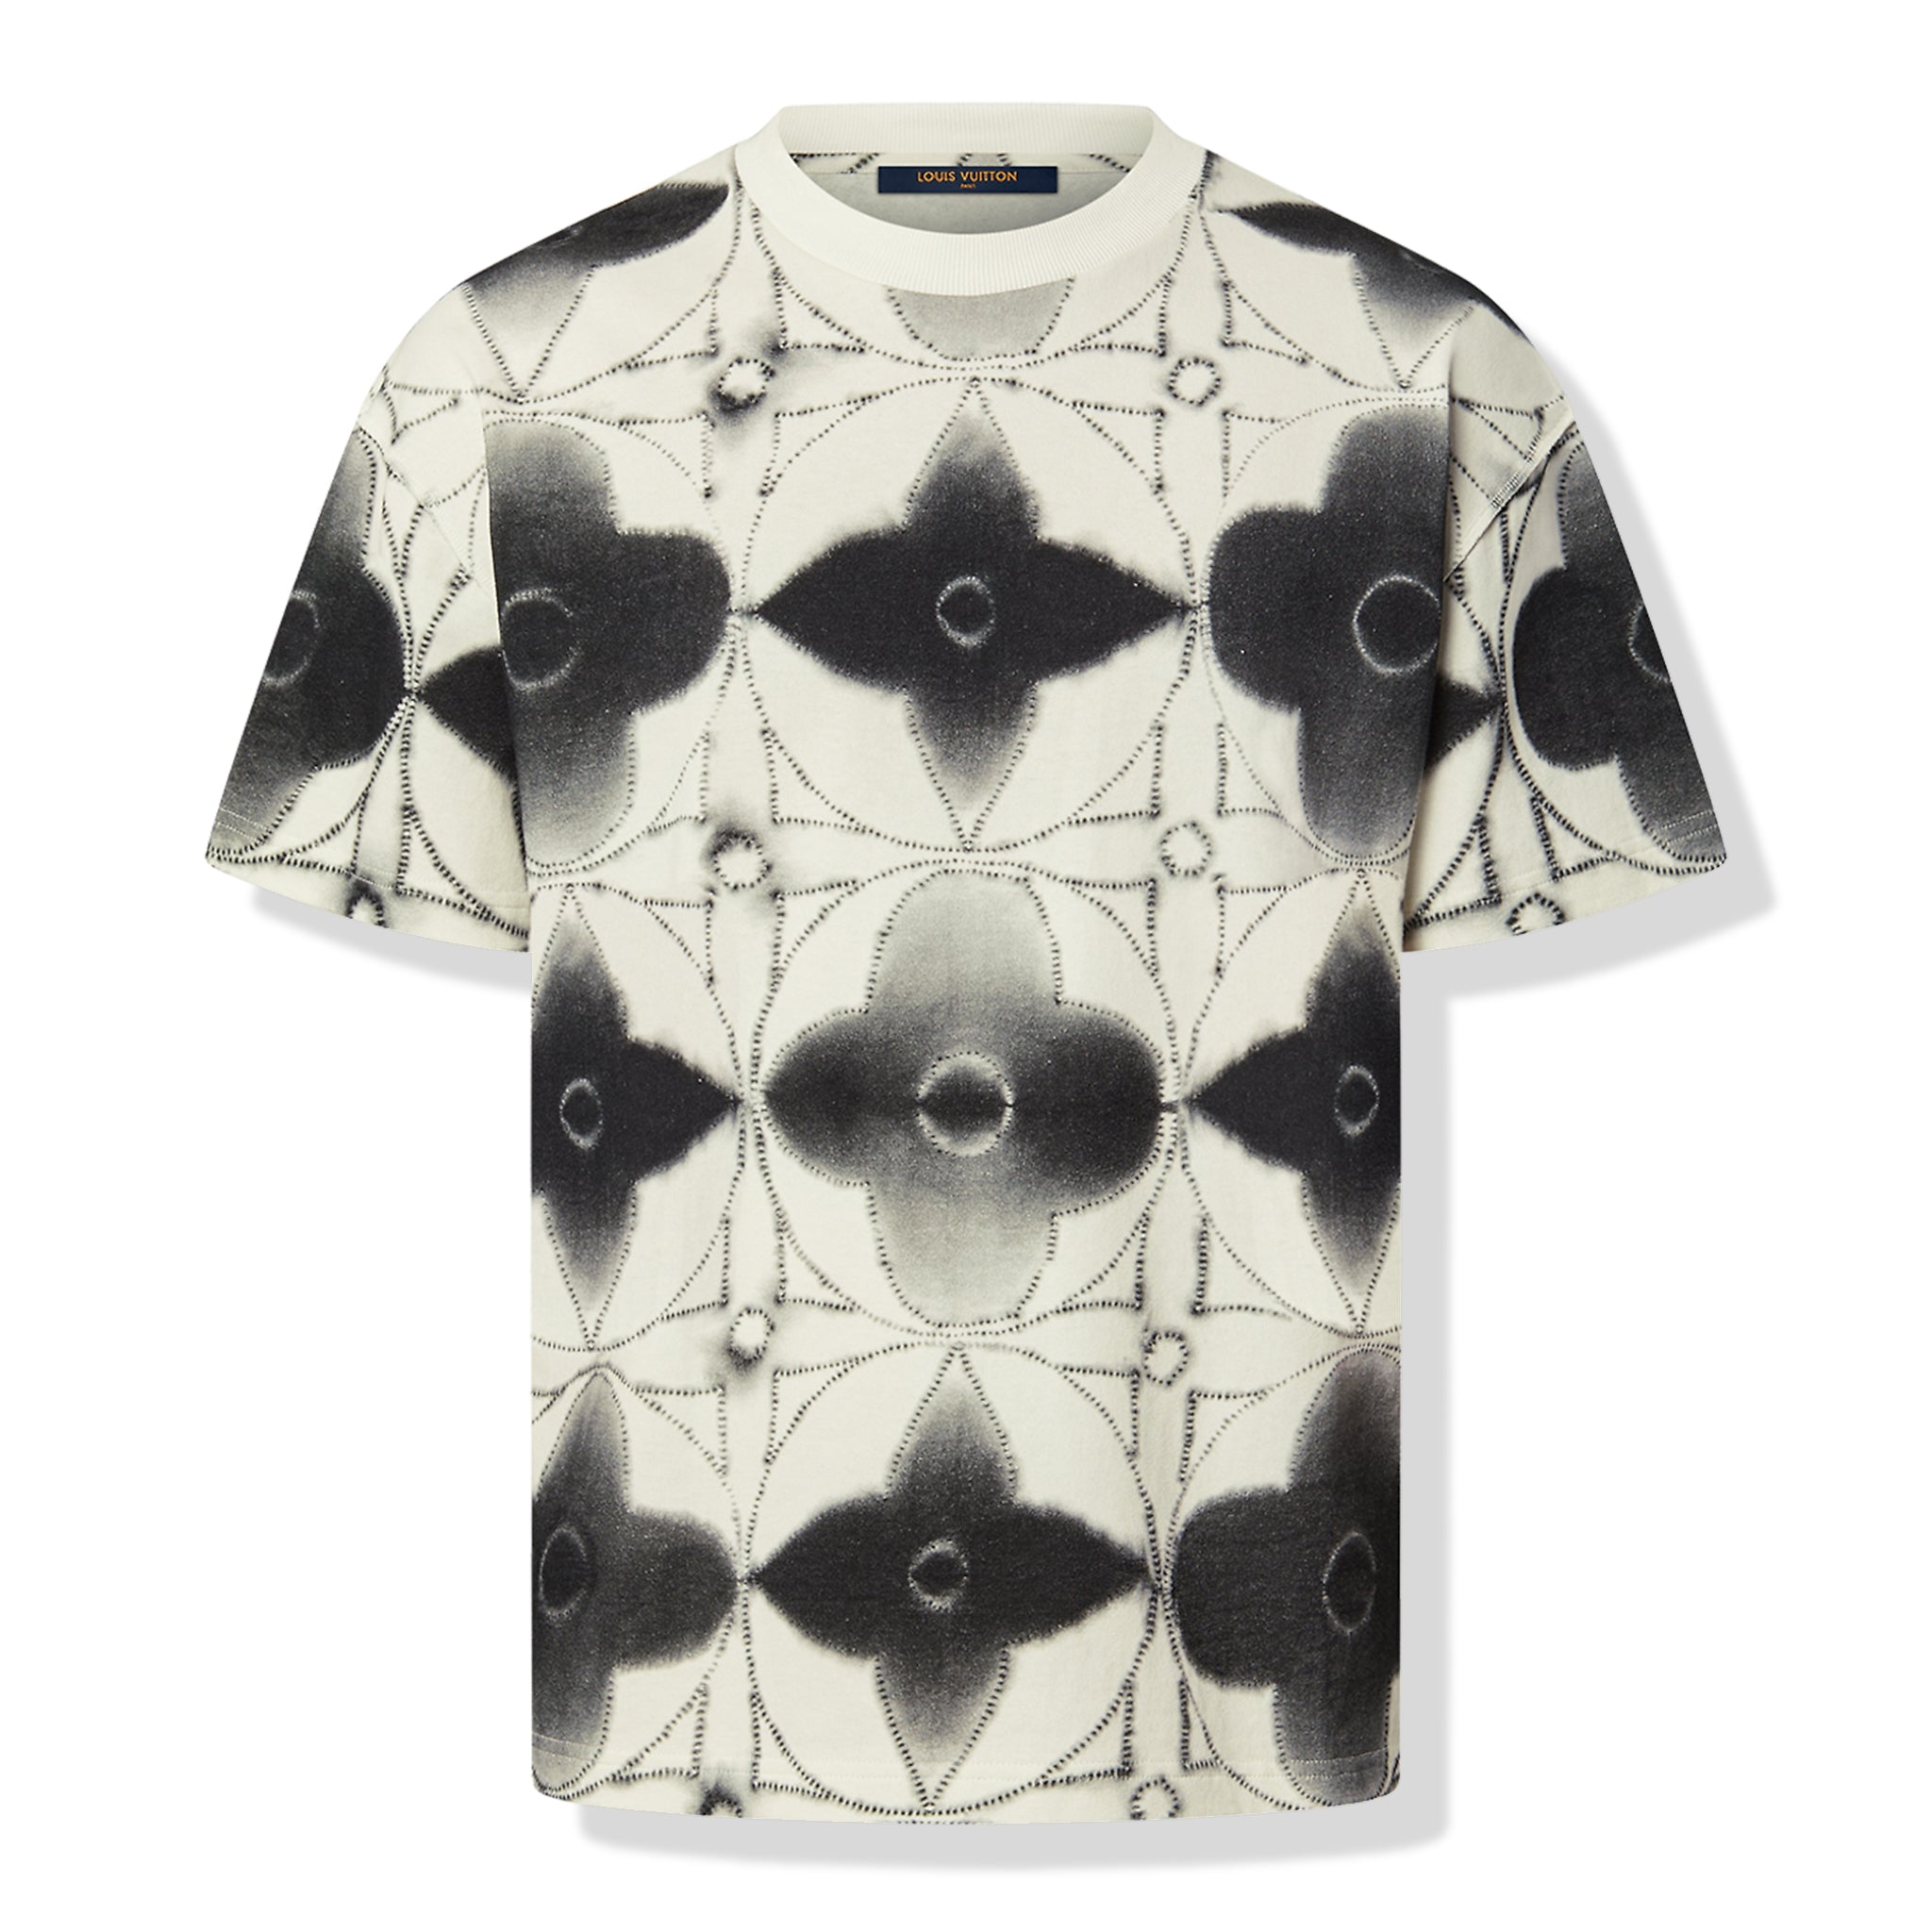 Image of Louis Vuitton Shibori Printed Tie-Dye Dark Grey T Shirt